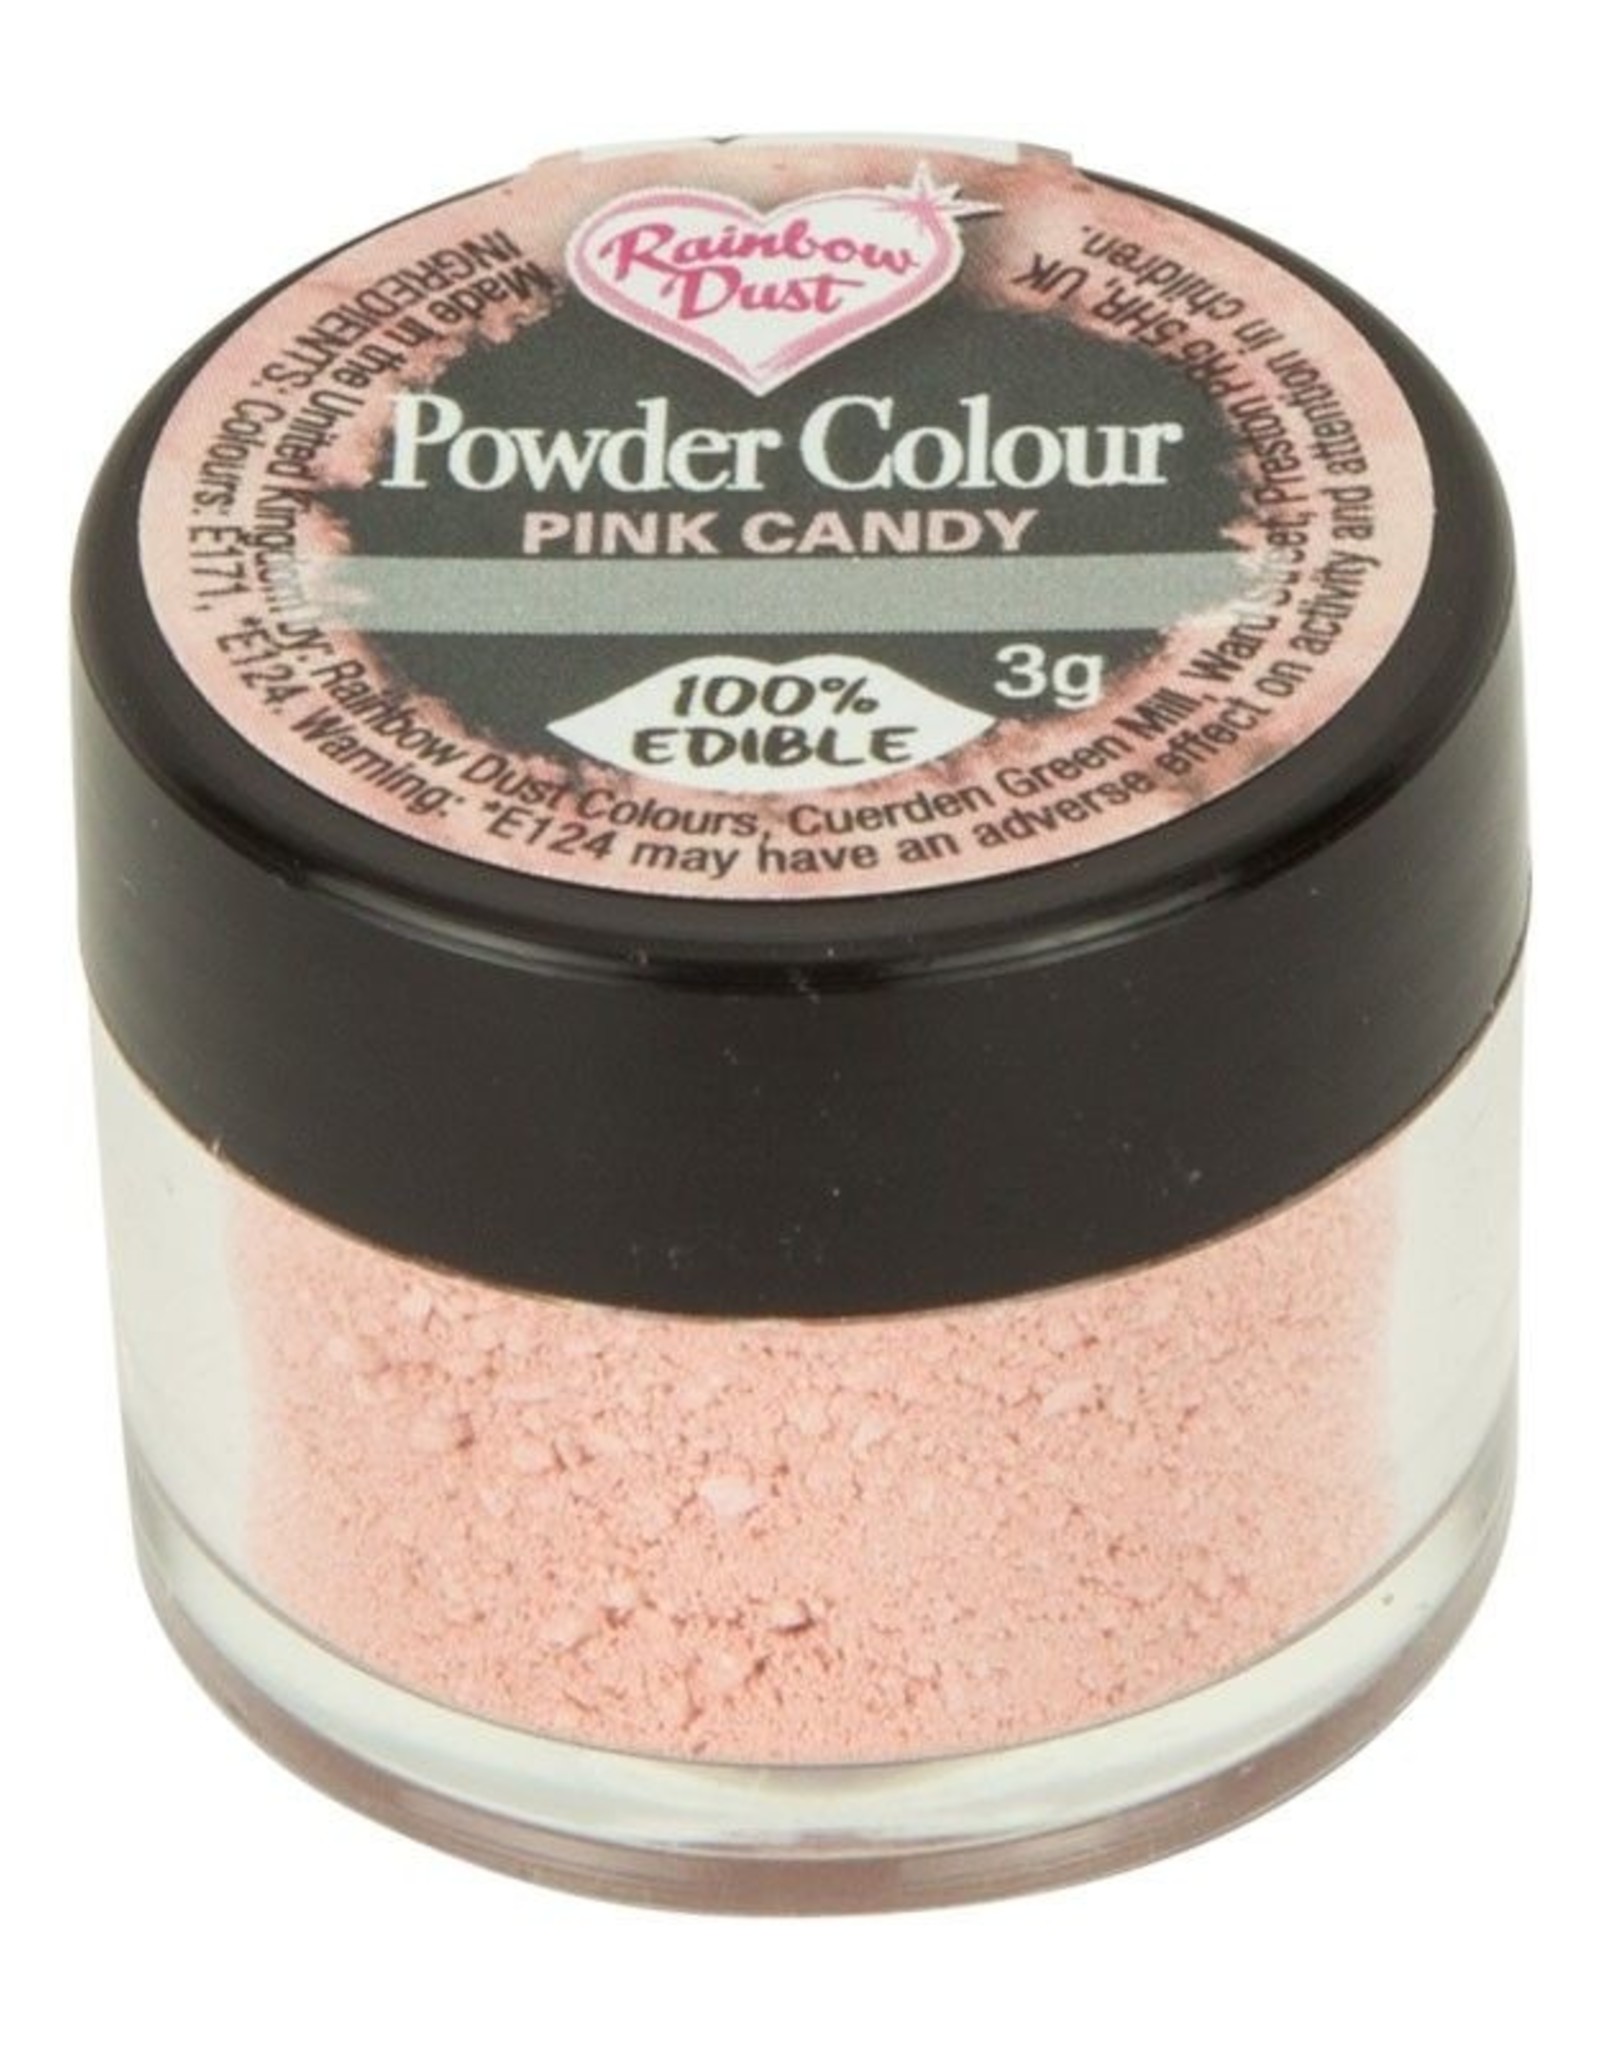 Rainbow Dust Rainbow Dust Powder Colour - Pink Candy